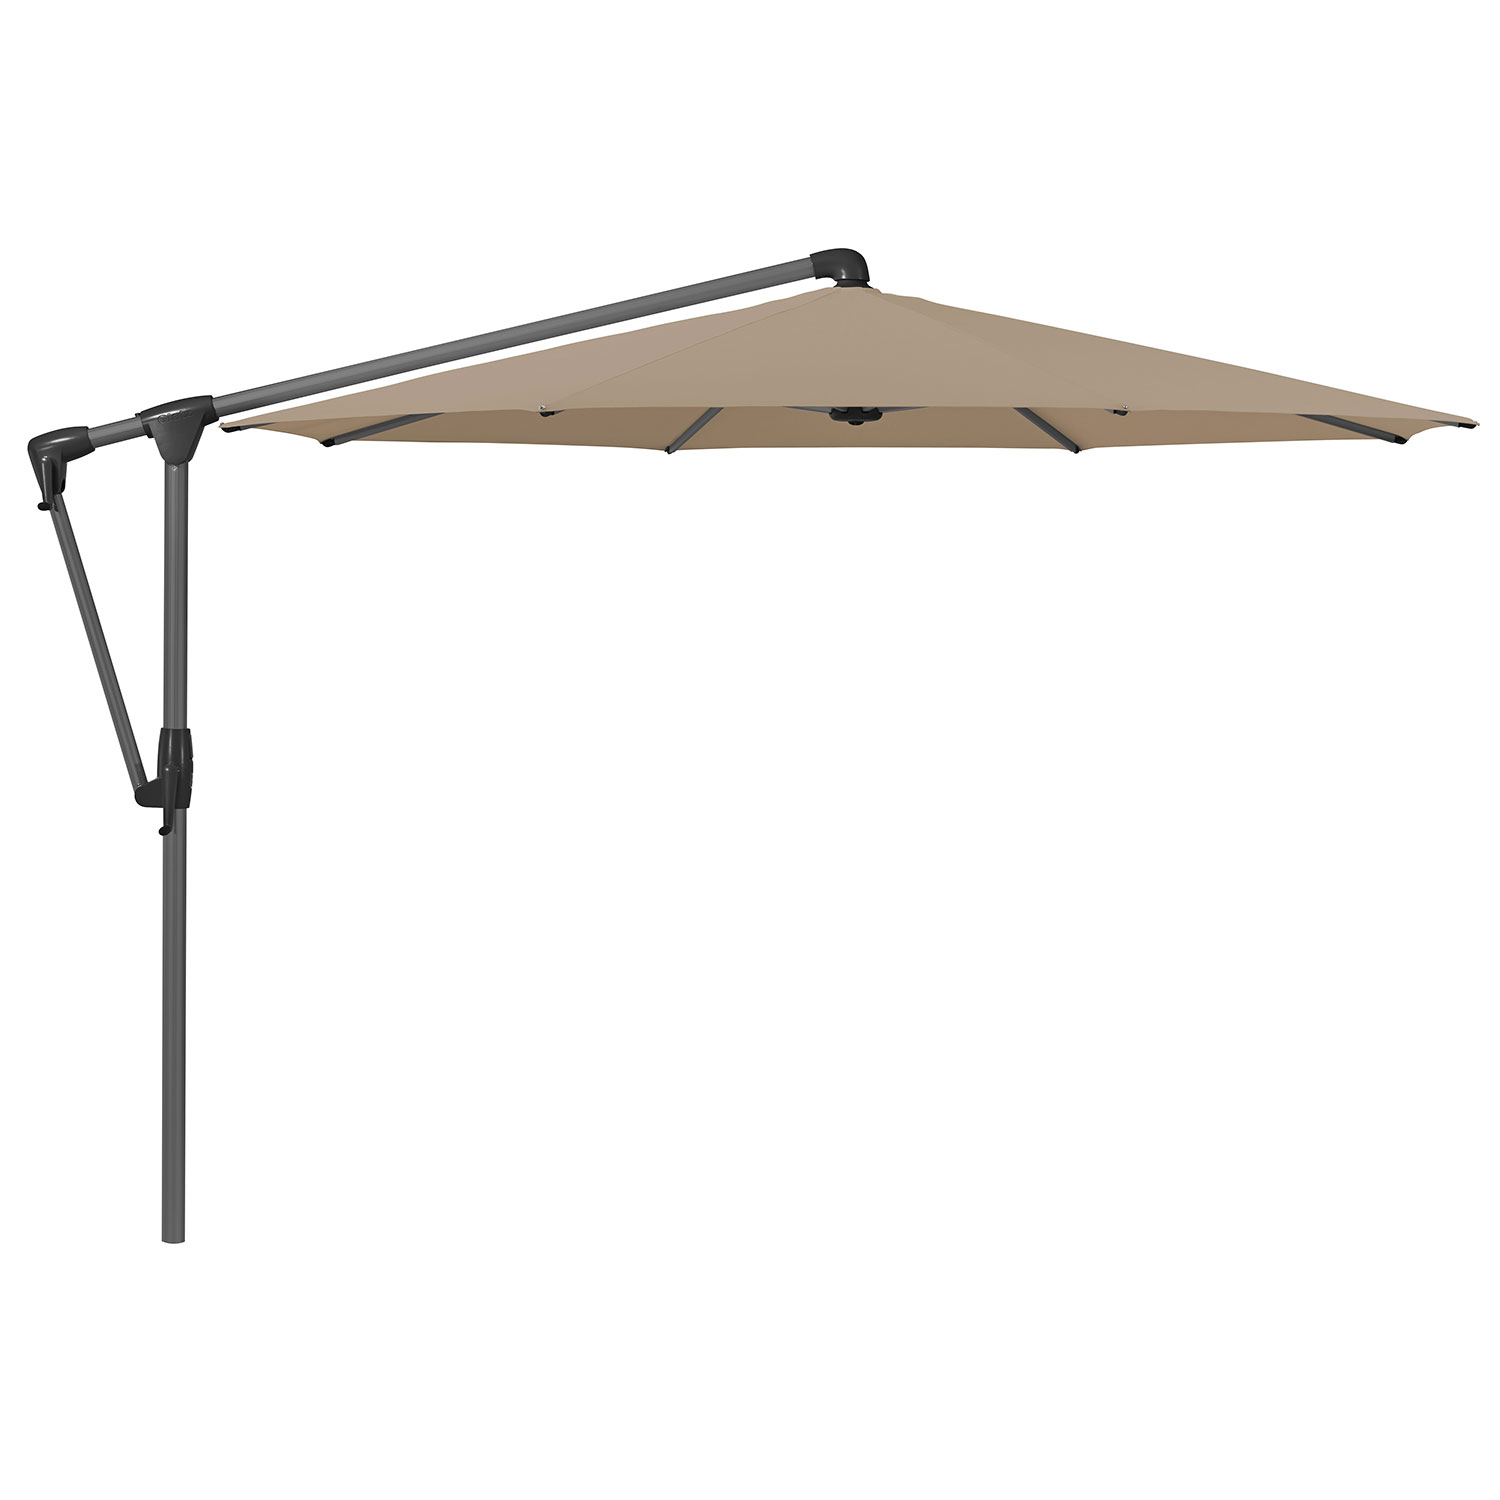 Sunwing Casa frihängande parasoll 330 cm kat.5 antracite alu / 650 camel